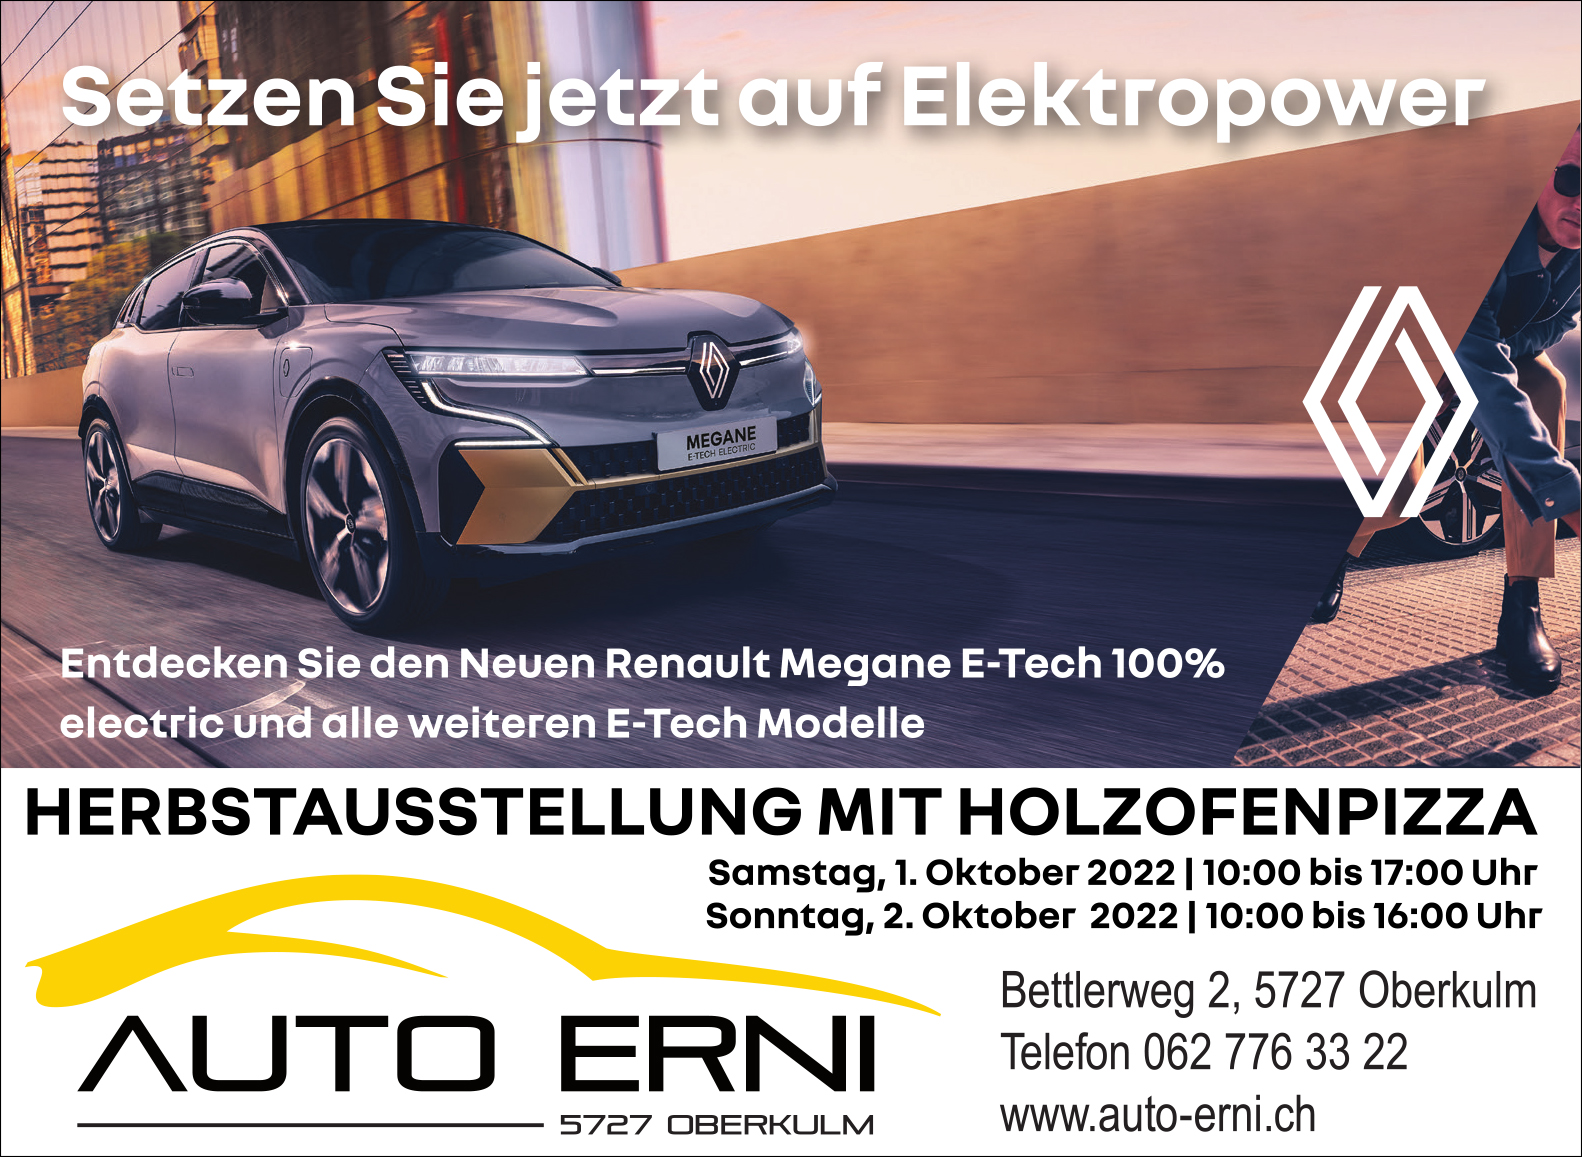 Auto Erni Renault Herbstausstellung 134x98 Wochenpost halbe Seite 2022 1